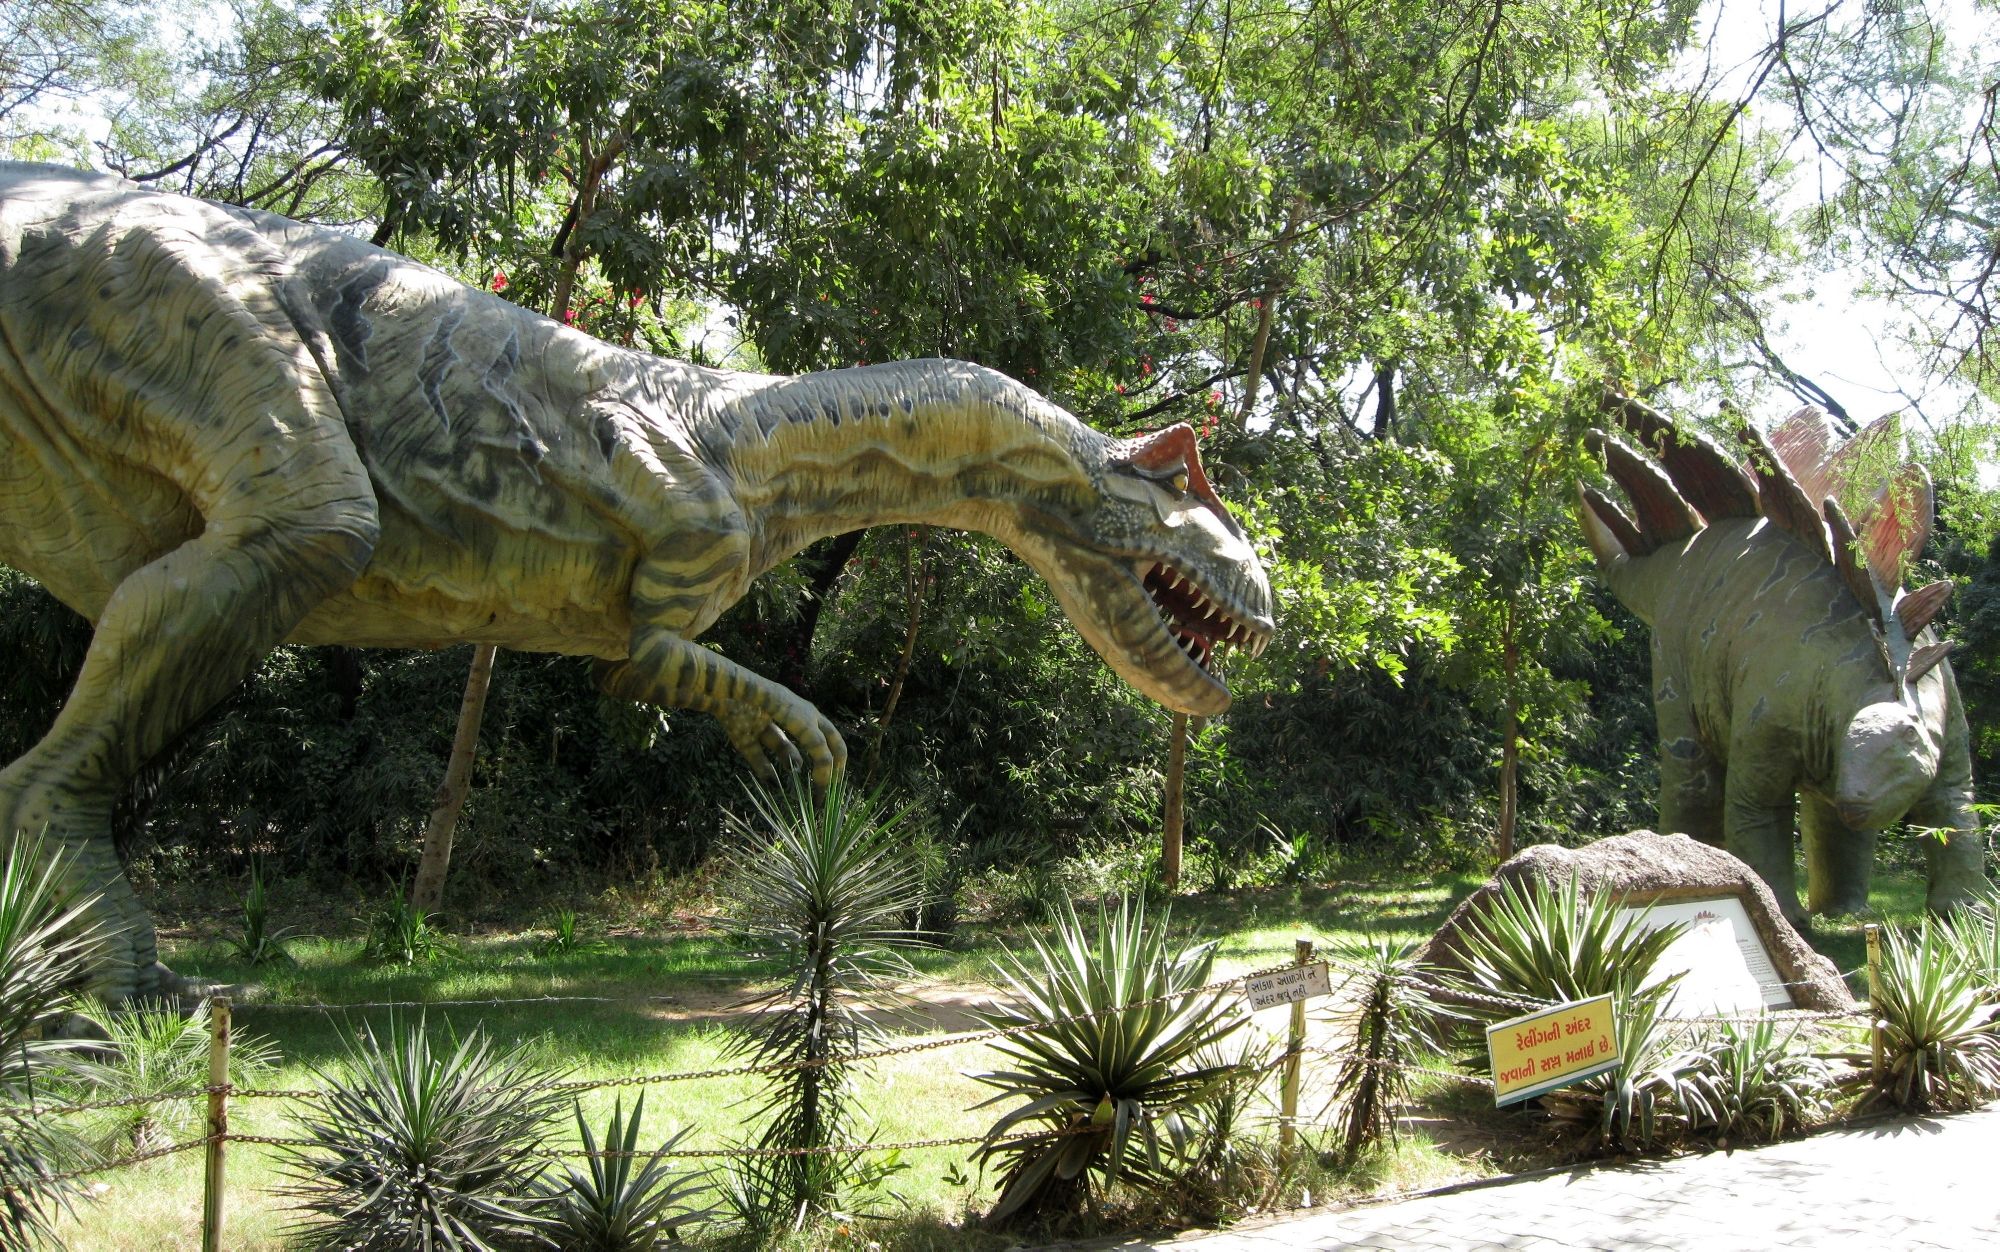 Живой динозавр в наше время фото